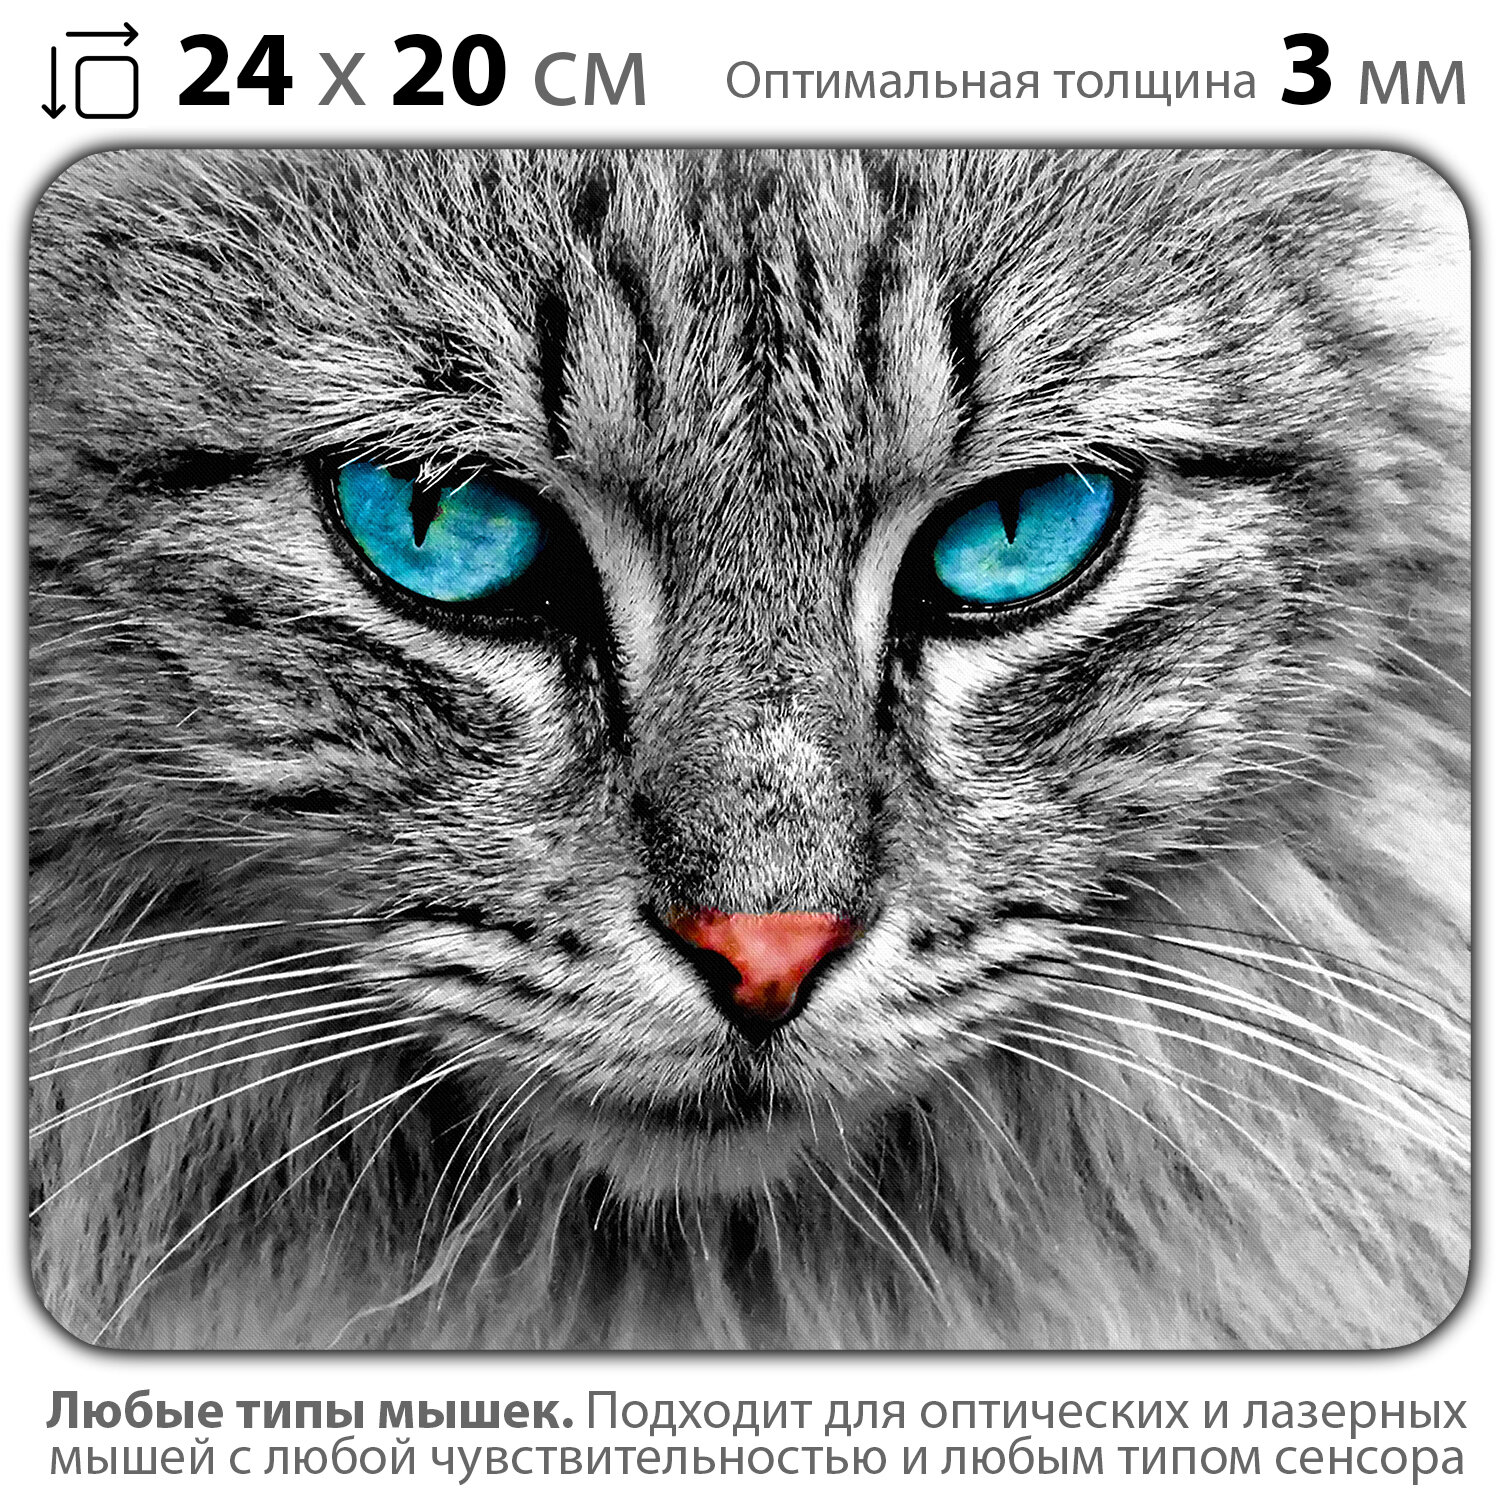 Коврик для мыши "Кот с голубыми глазами" (24 x 20 см x 3 мм)